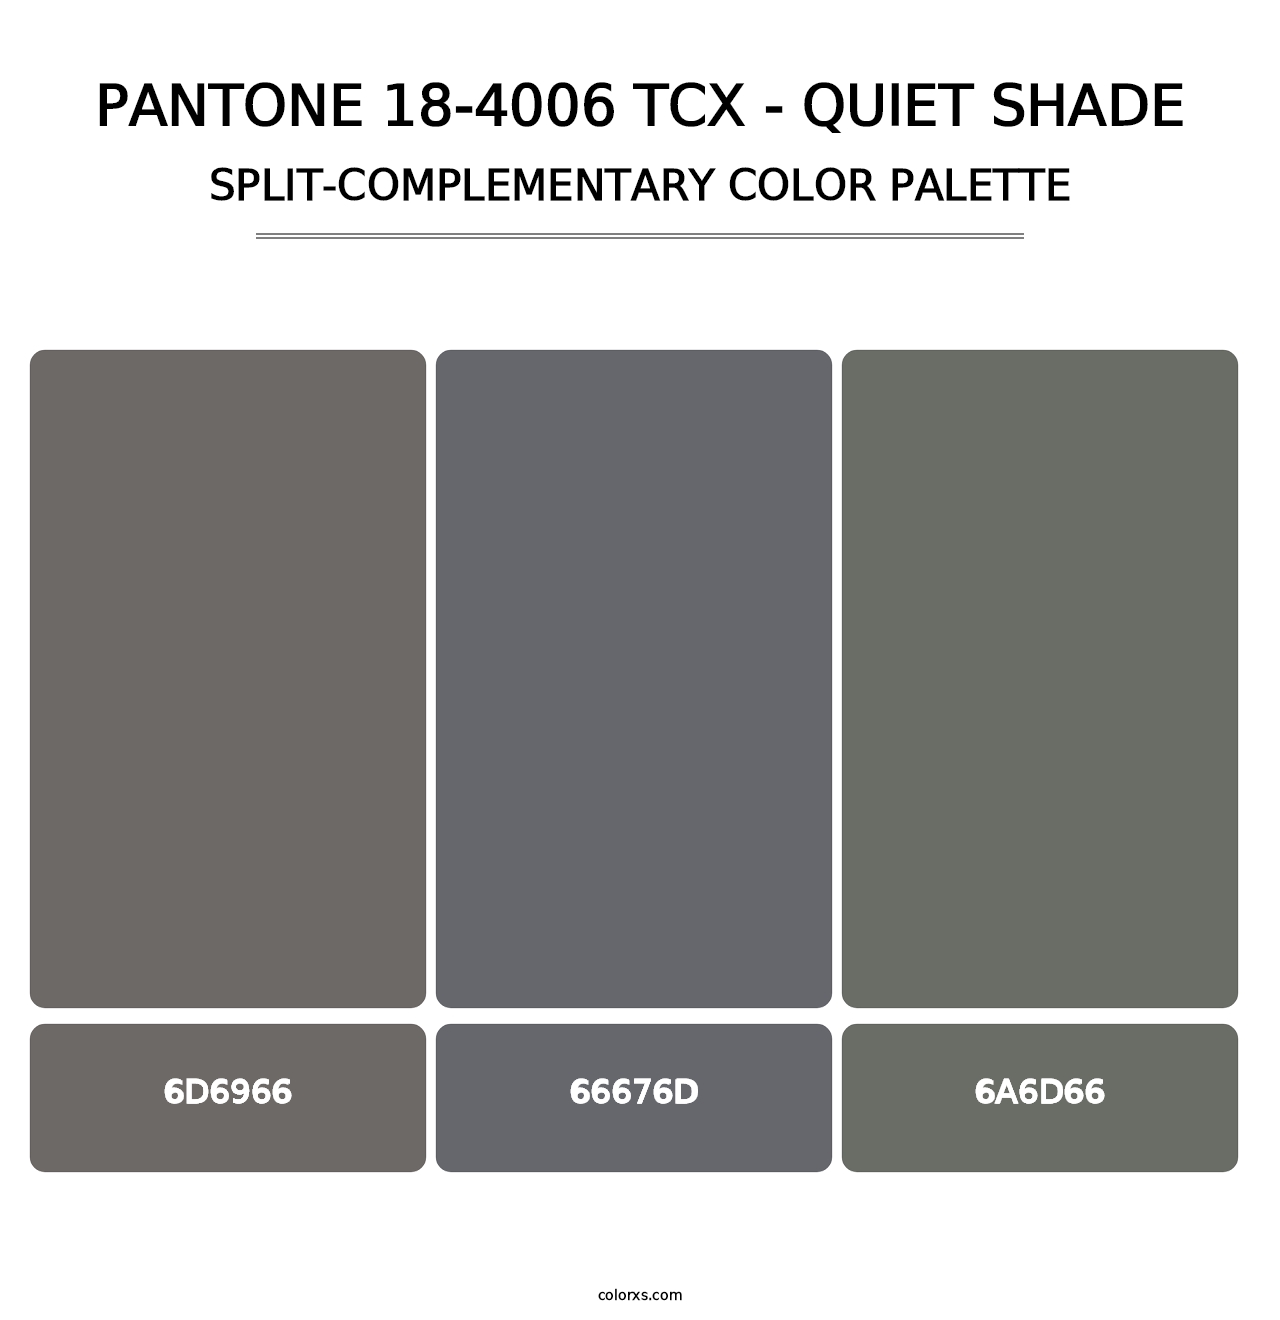 PANTONE 18-4006 TCX - Quiet Shade - Split-Complementary Color Palette